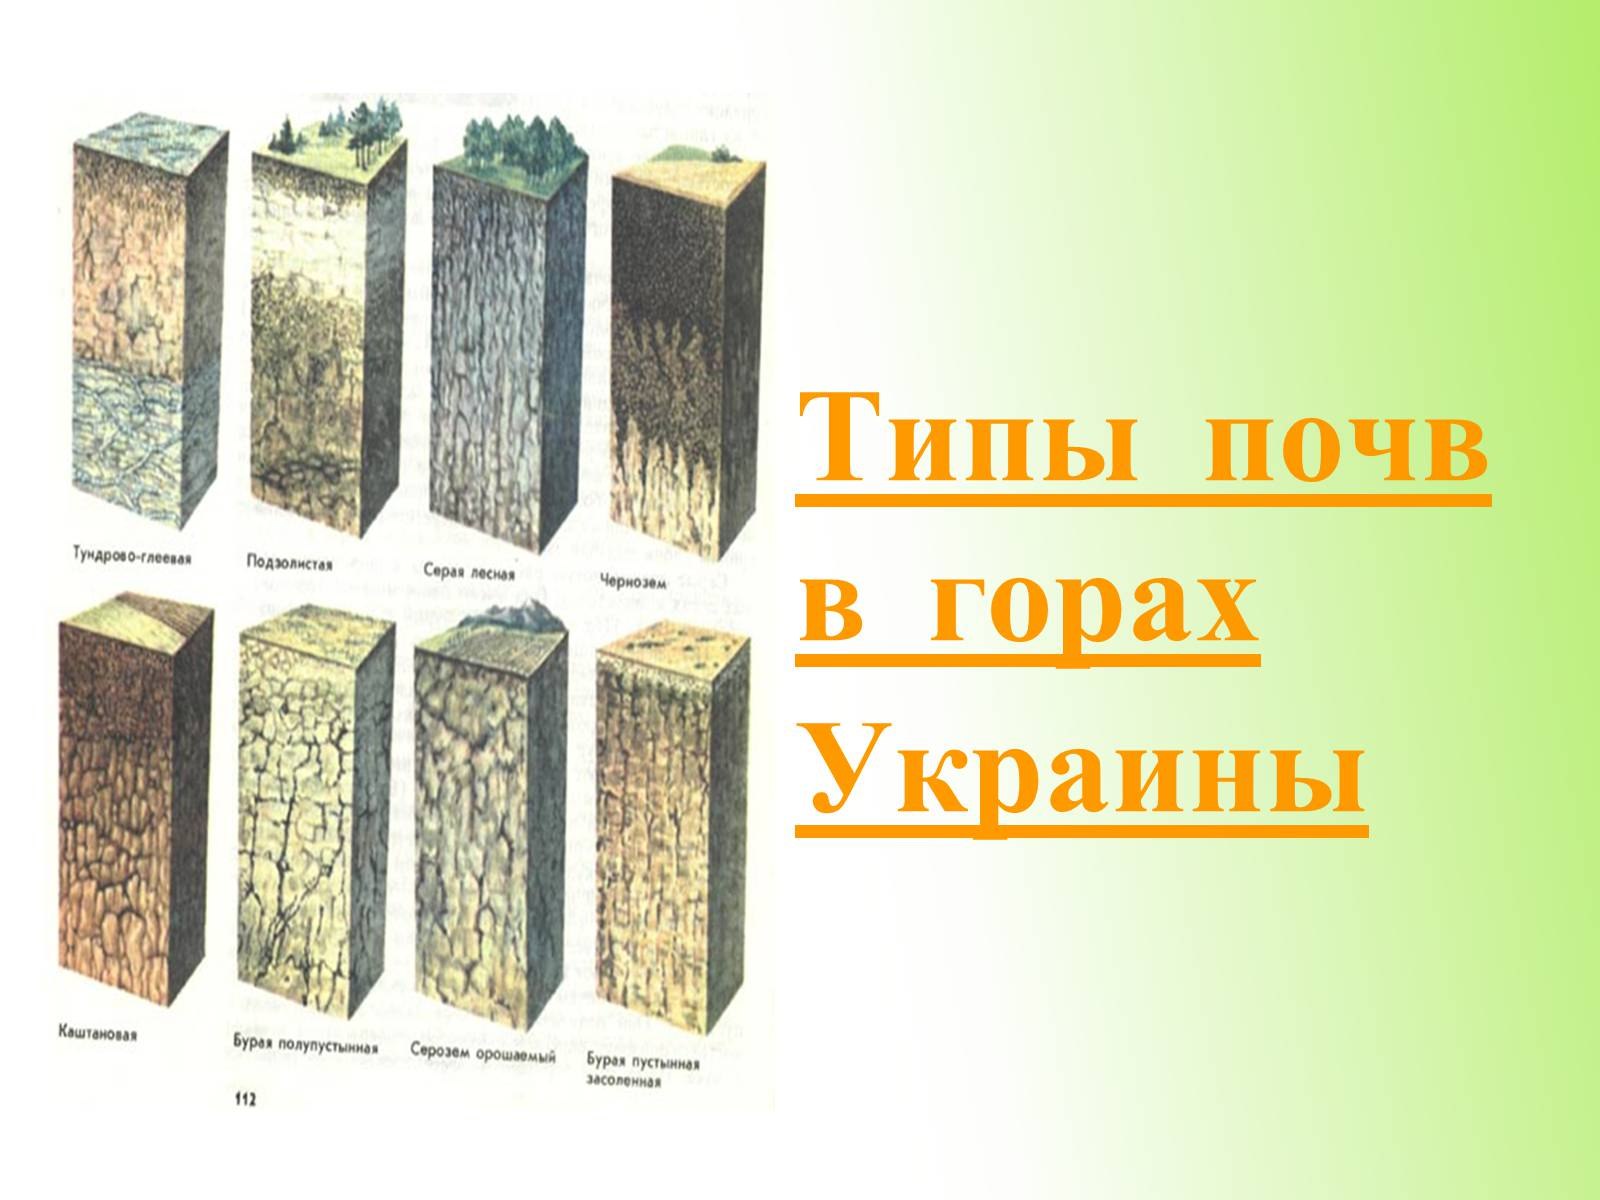 Виды почв. Основные типы почв. Горные типы почв. Почва Украины кратко. Тип почвы в Украине.